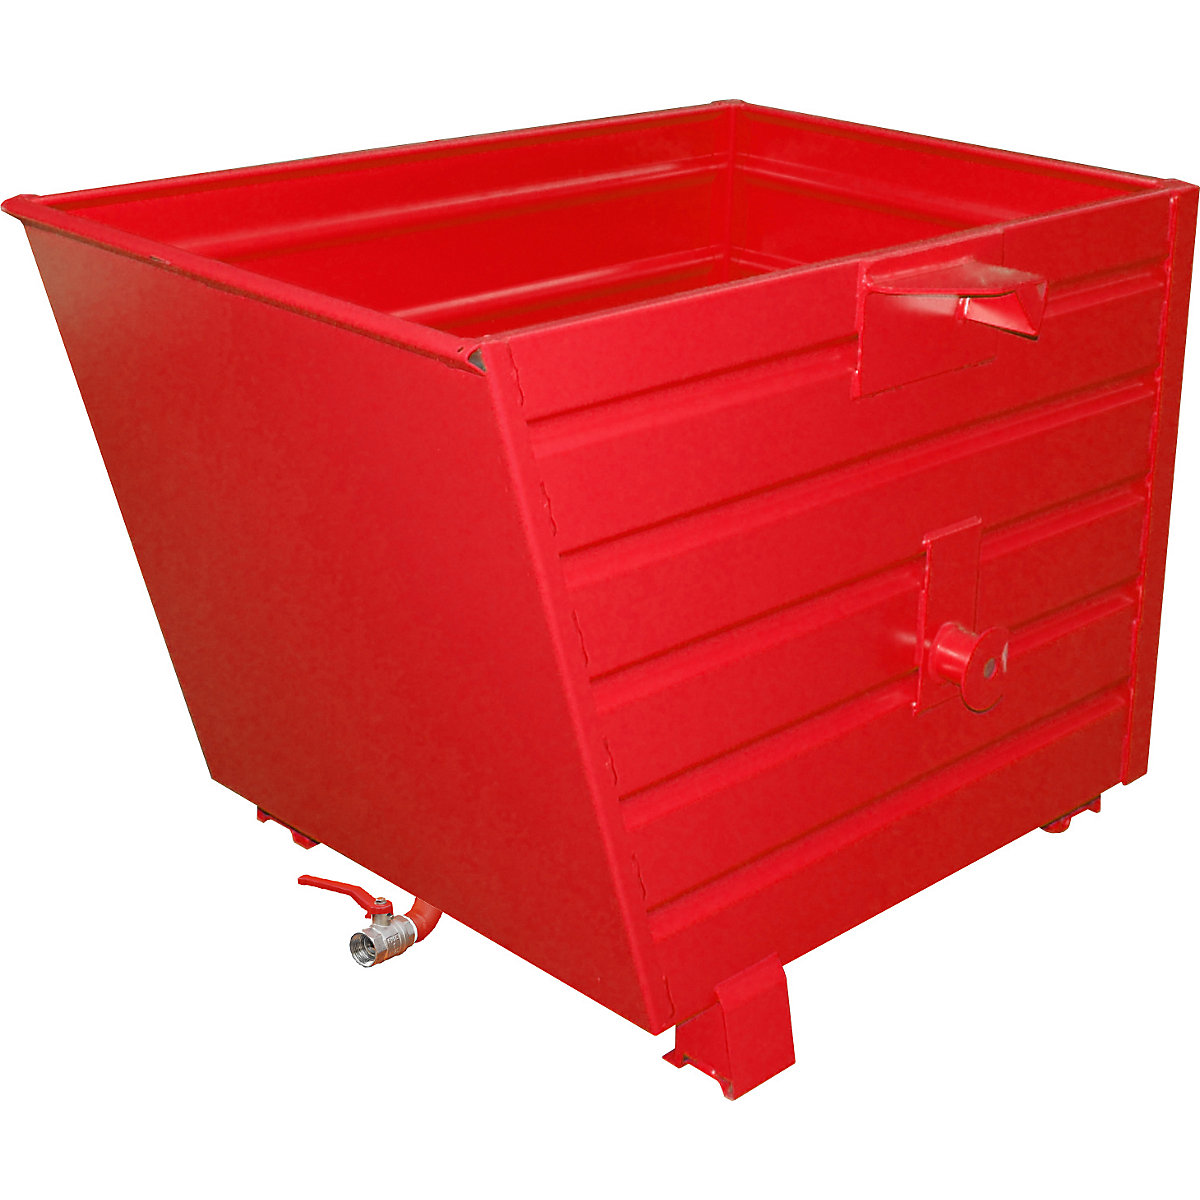 EUROKRAFTpro – Container basculant și stivuibil pentru șpan BSS, volum 0,7 m³, roșu aprins